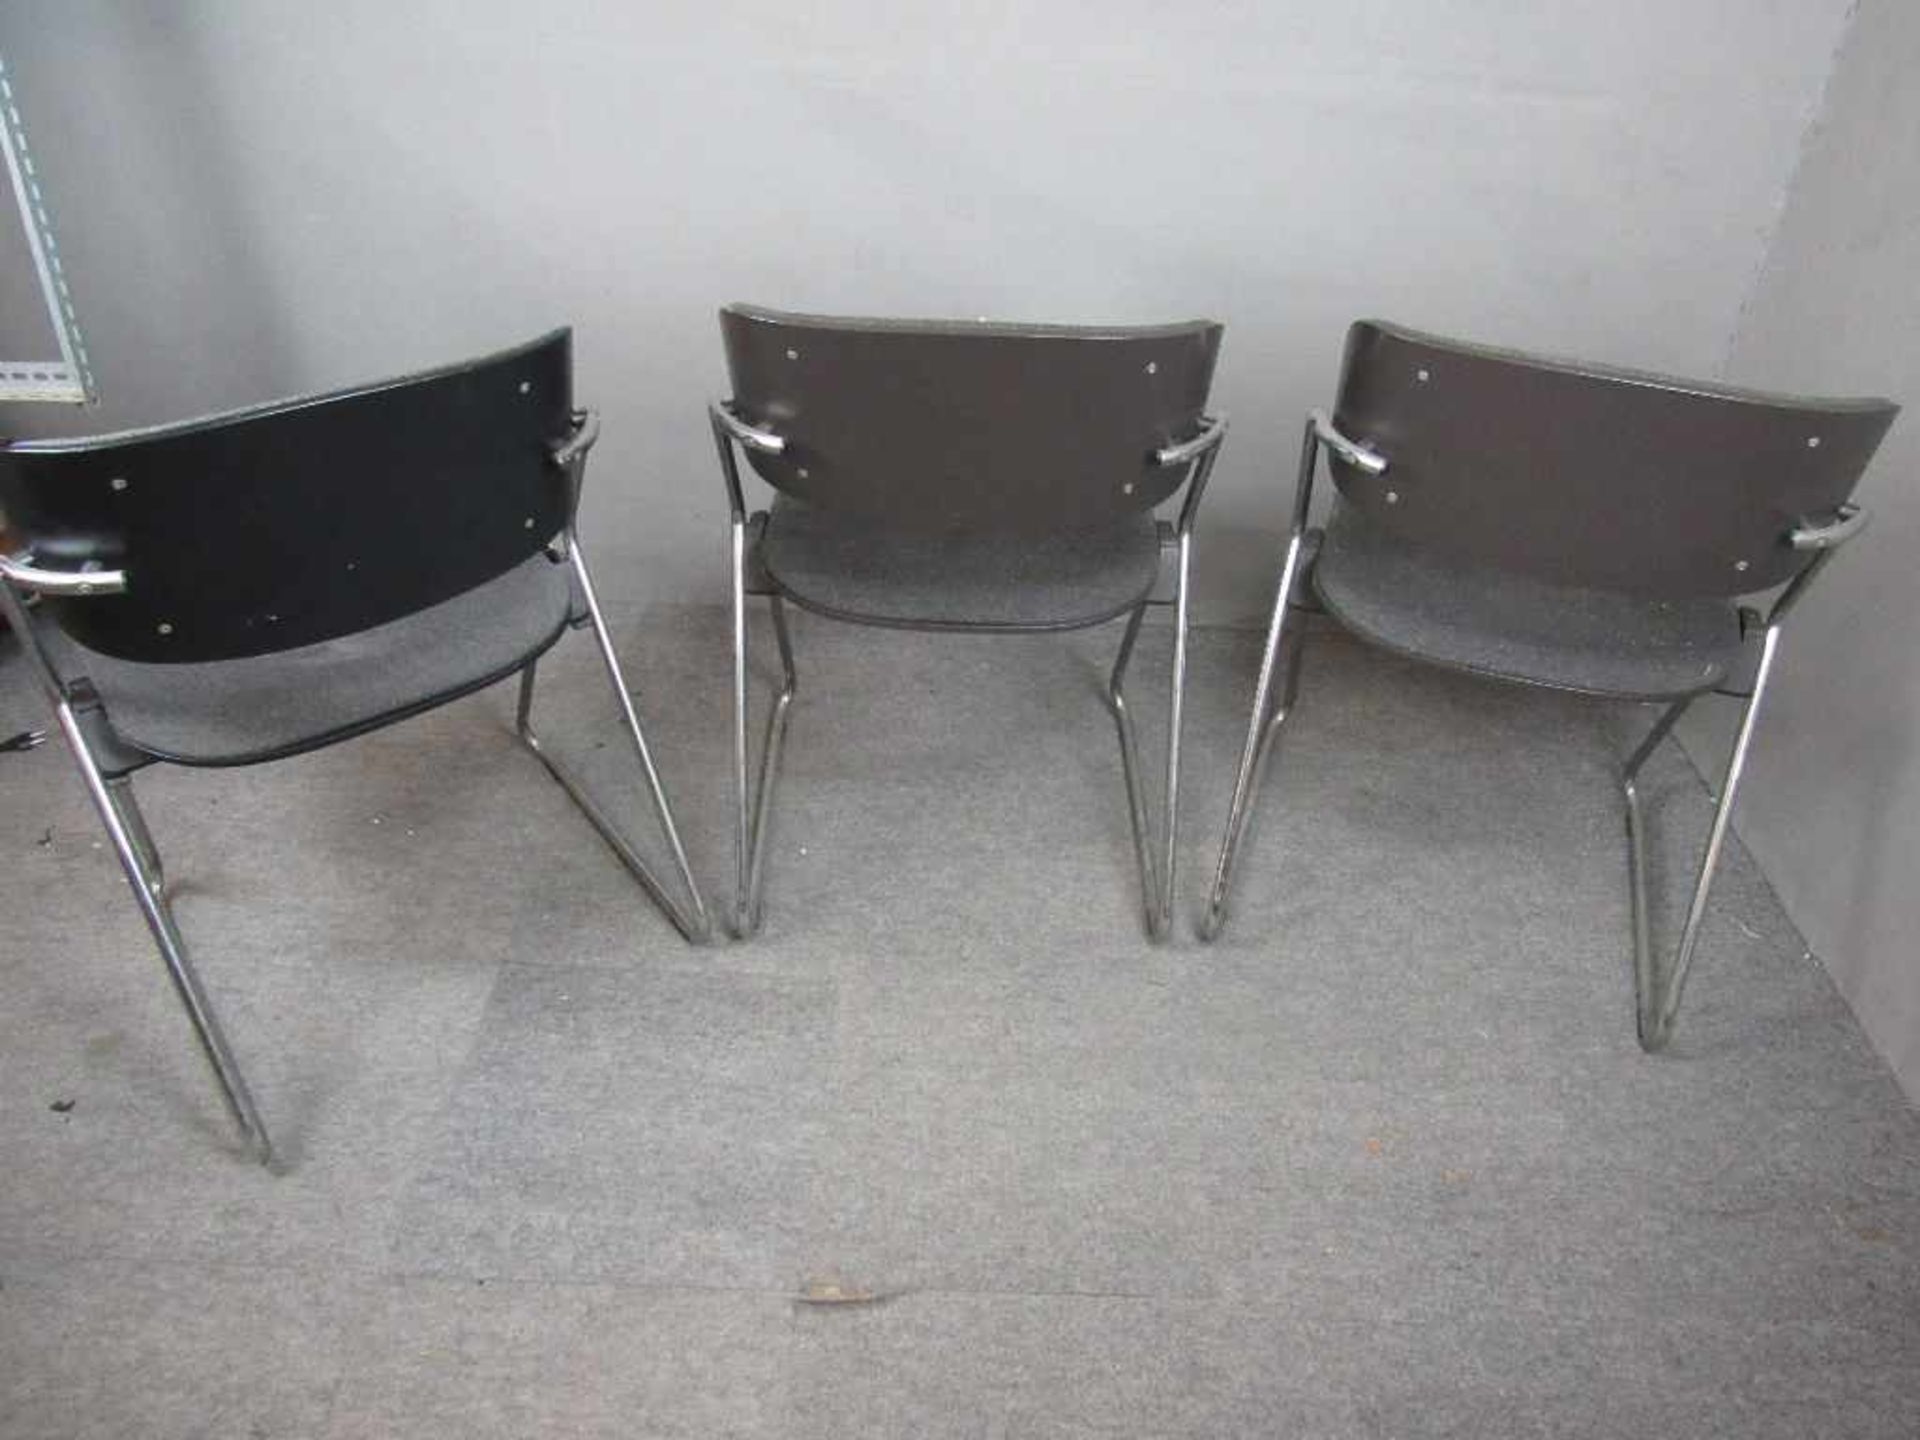 Space Age 60er Jahre drei Designerstühle gepolstert auf Chromgestell Hersteller Wilkhan stapelbar- - - Bild 2 aus 4